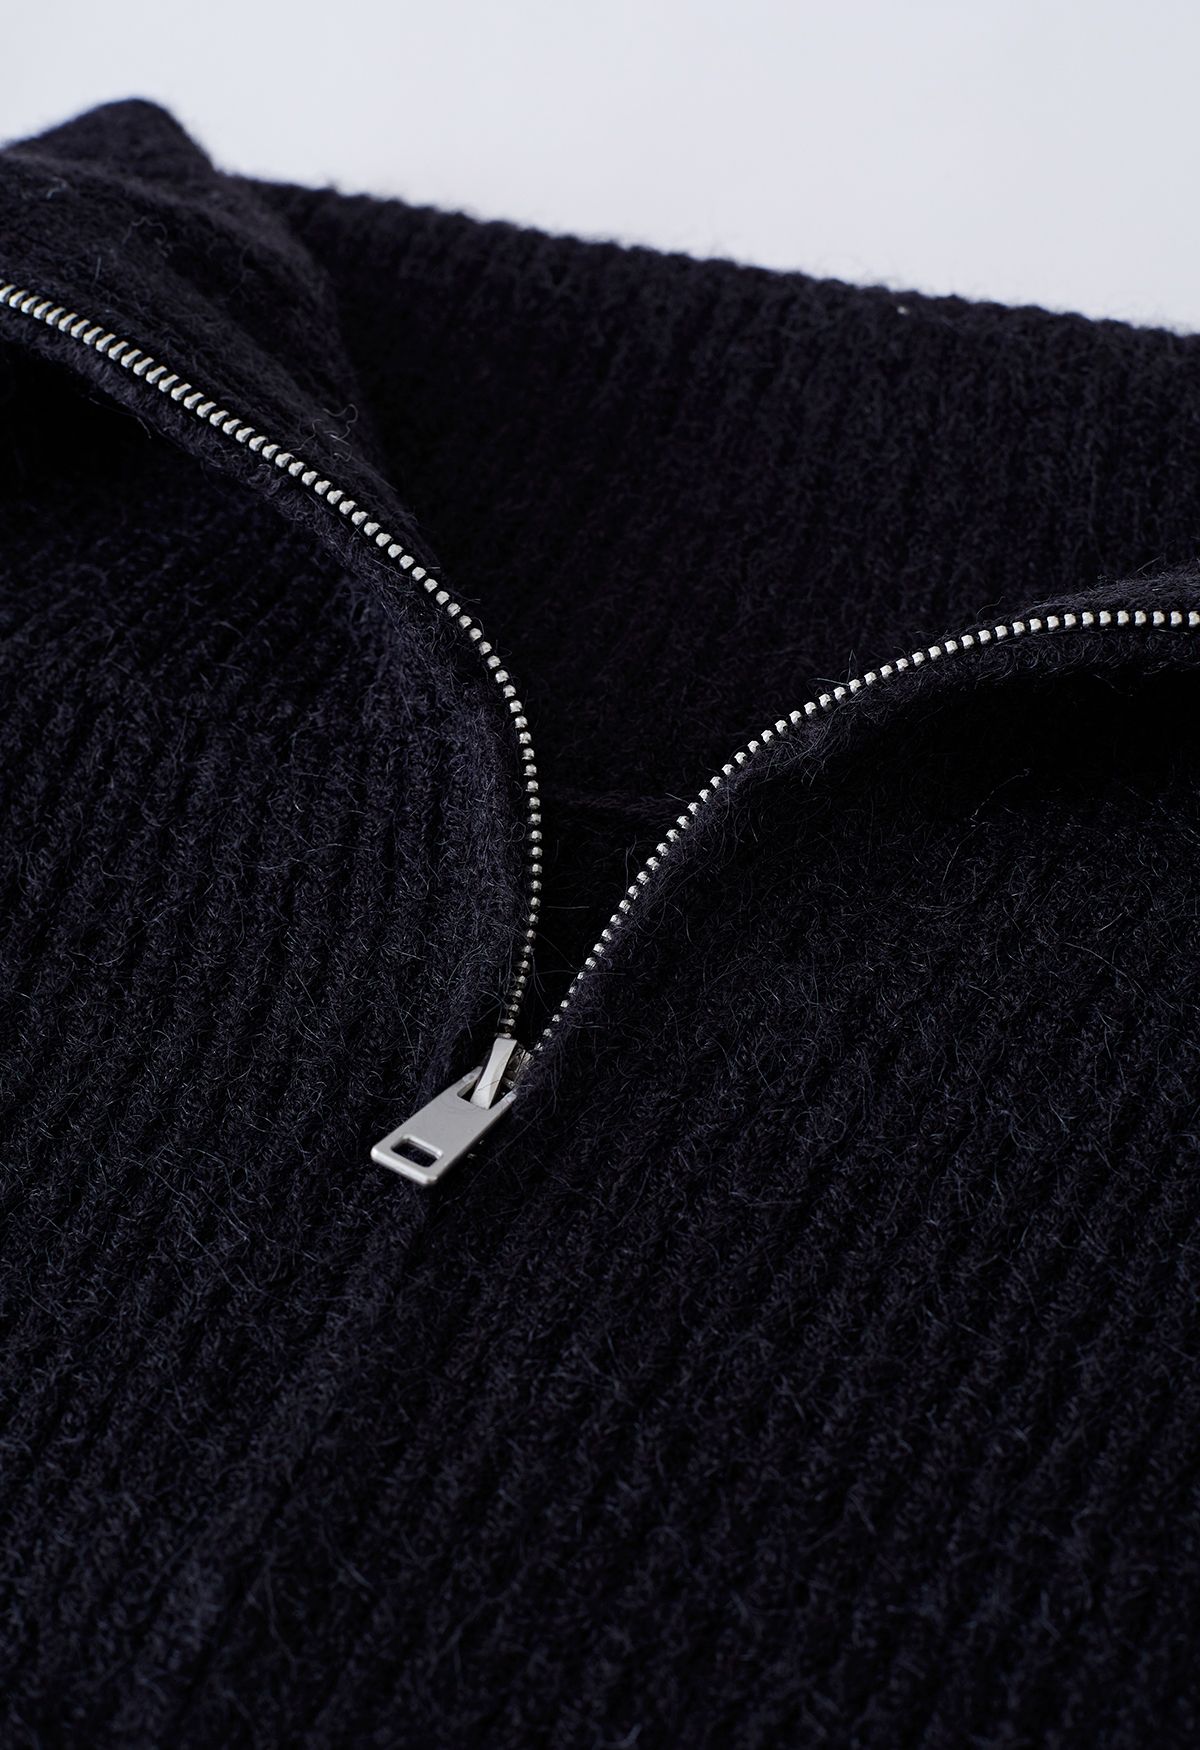 [Qualitätssicherung und kostenloser Versand] Flap Collar in Fashion Cardigan Black Indie Knit and Ribbed Zipper Retro, - Unique